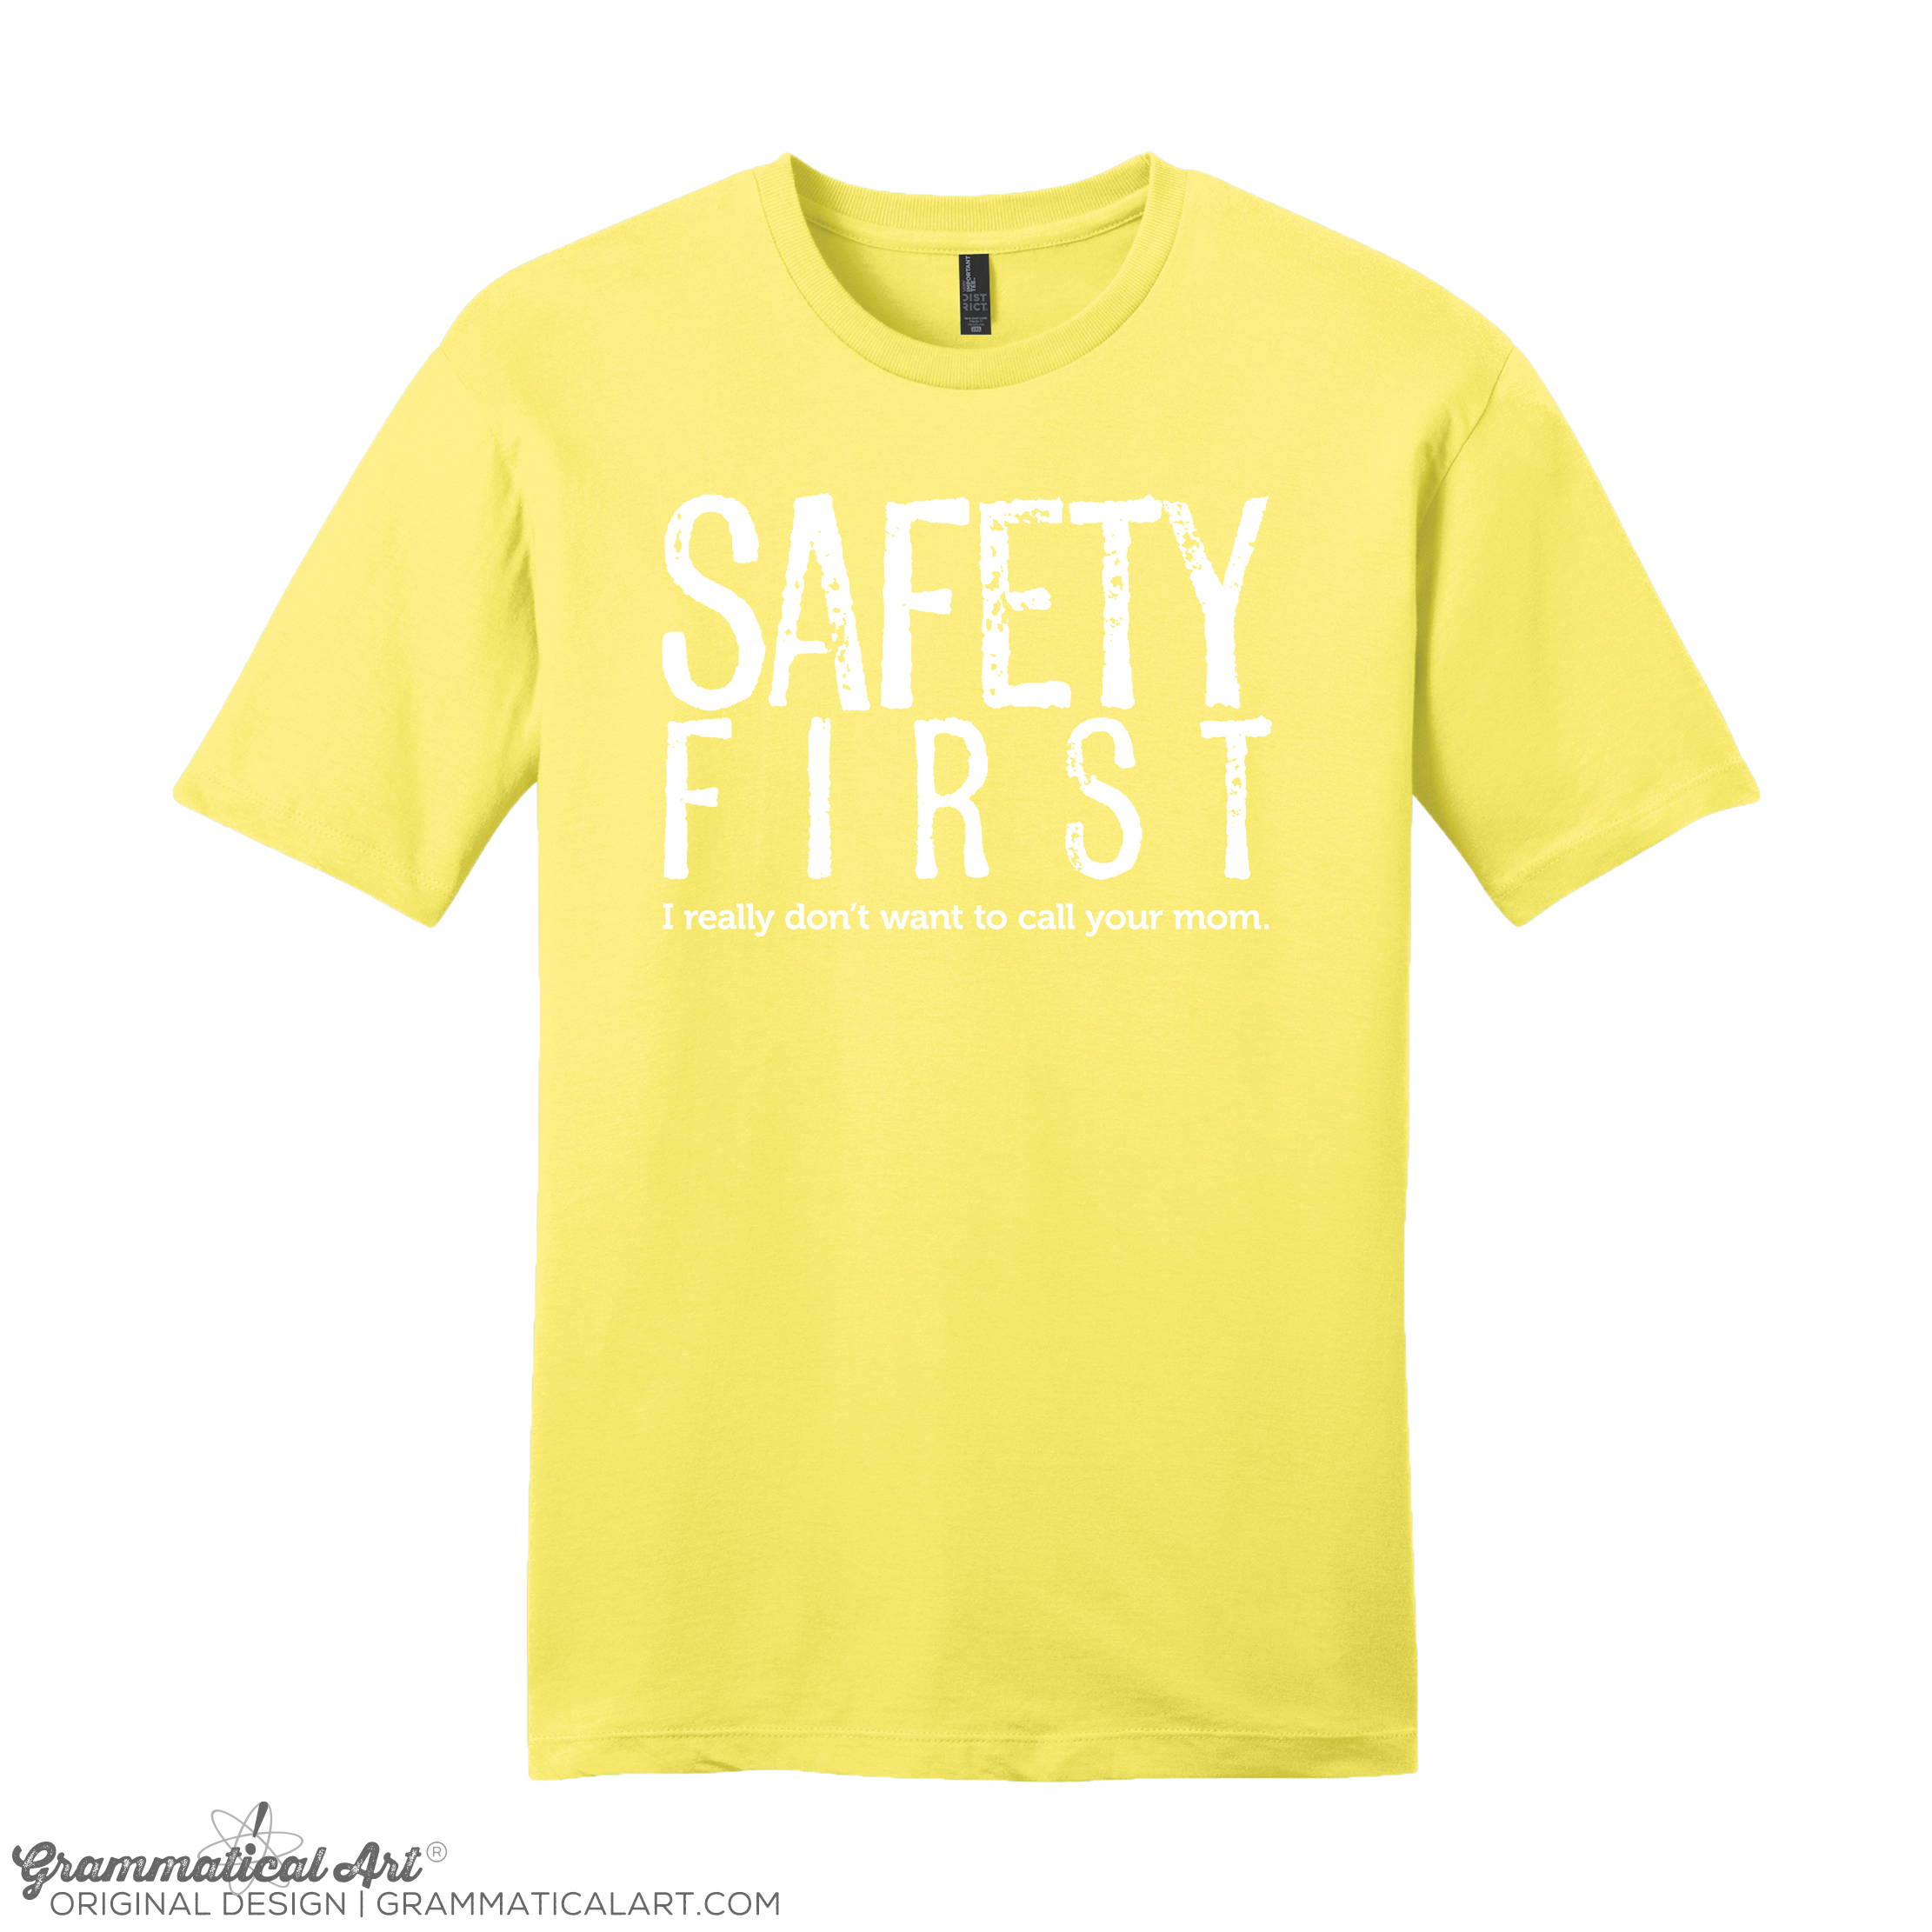 Women’s Safety First Shirt | Grammatical Art